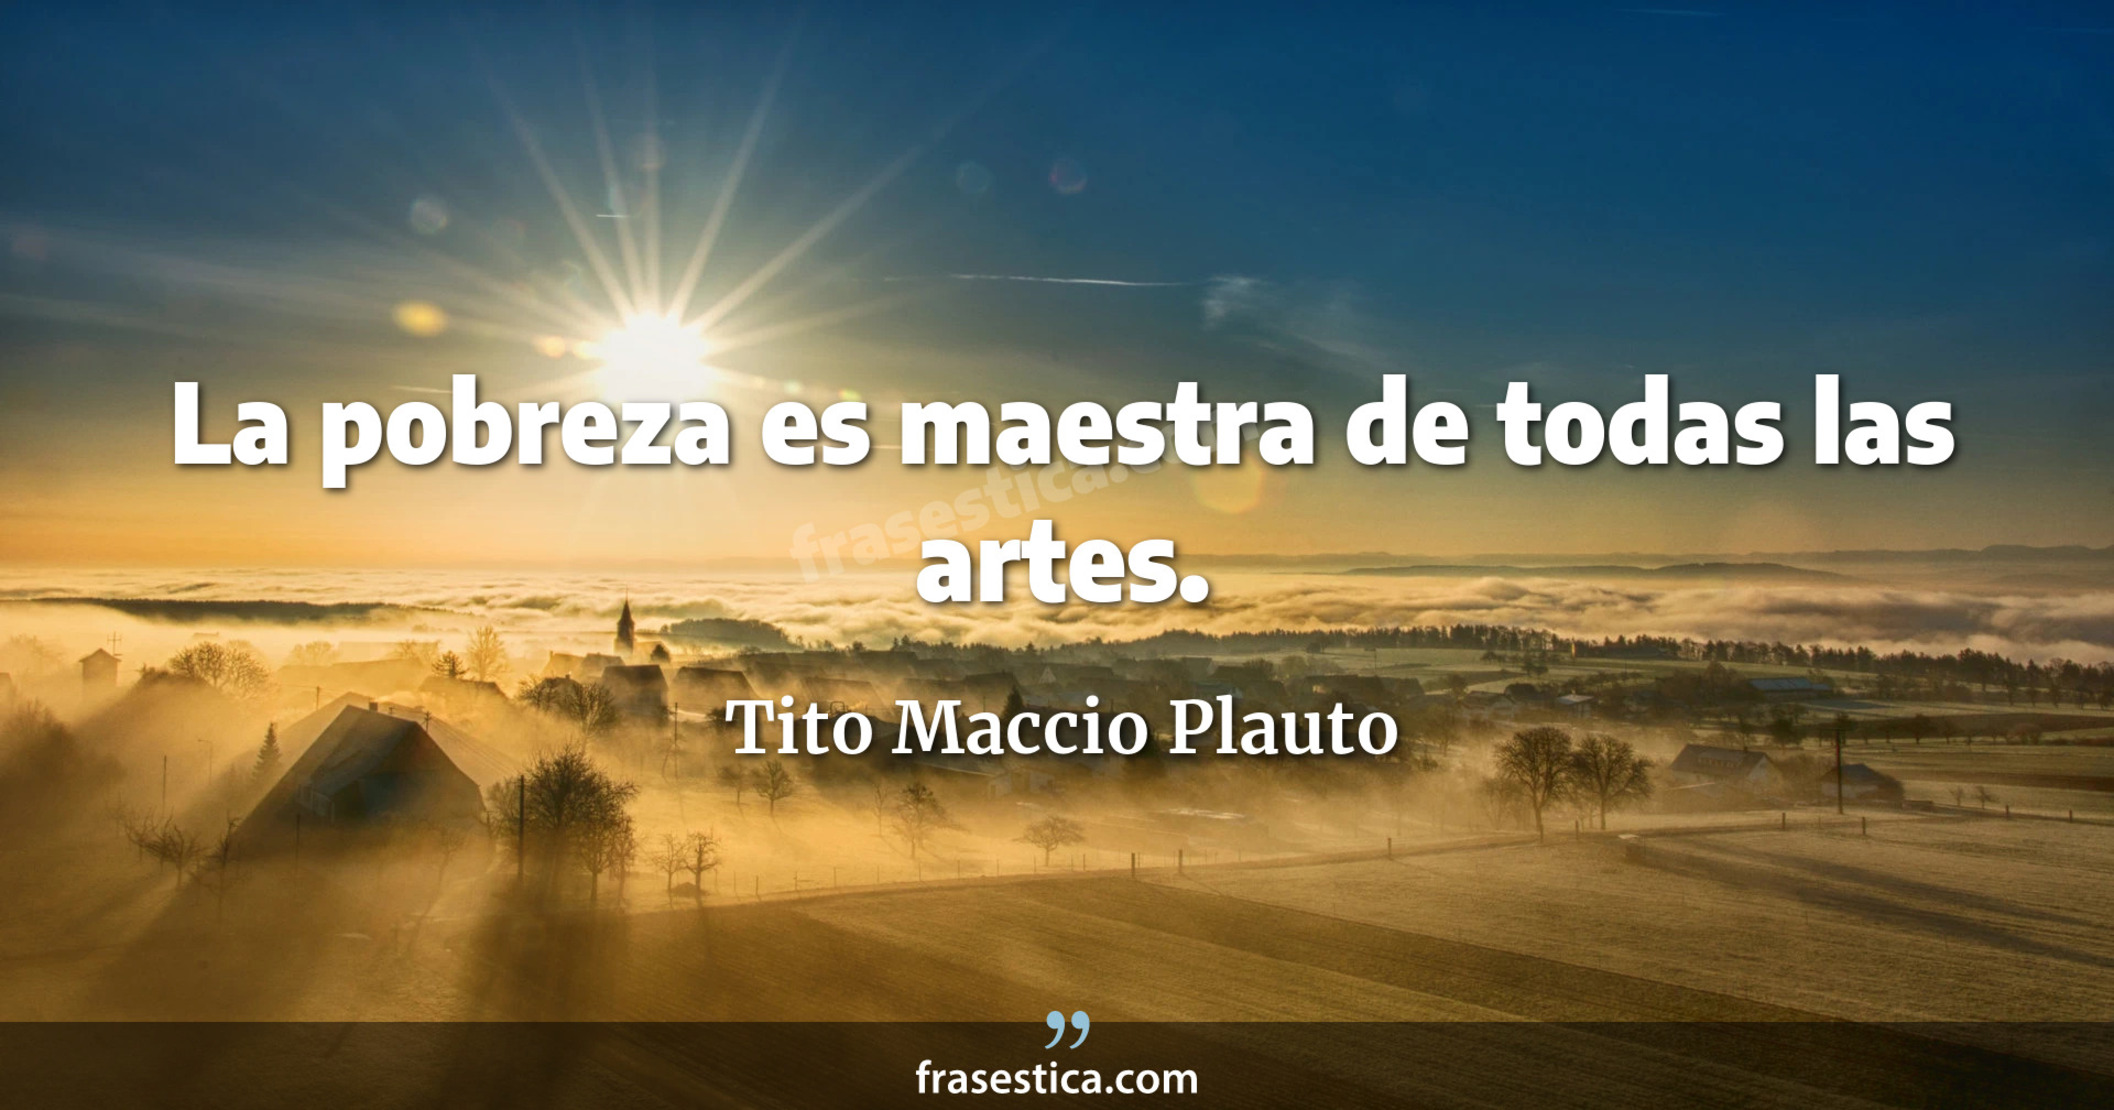 La pobreza es maestra de todas las artes. - Tito Maccio Plauto